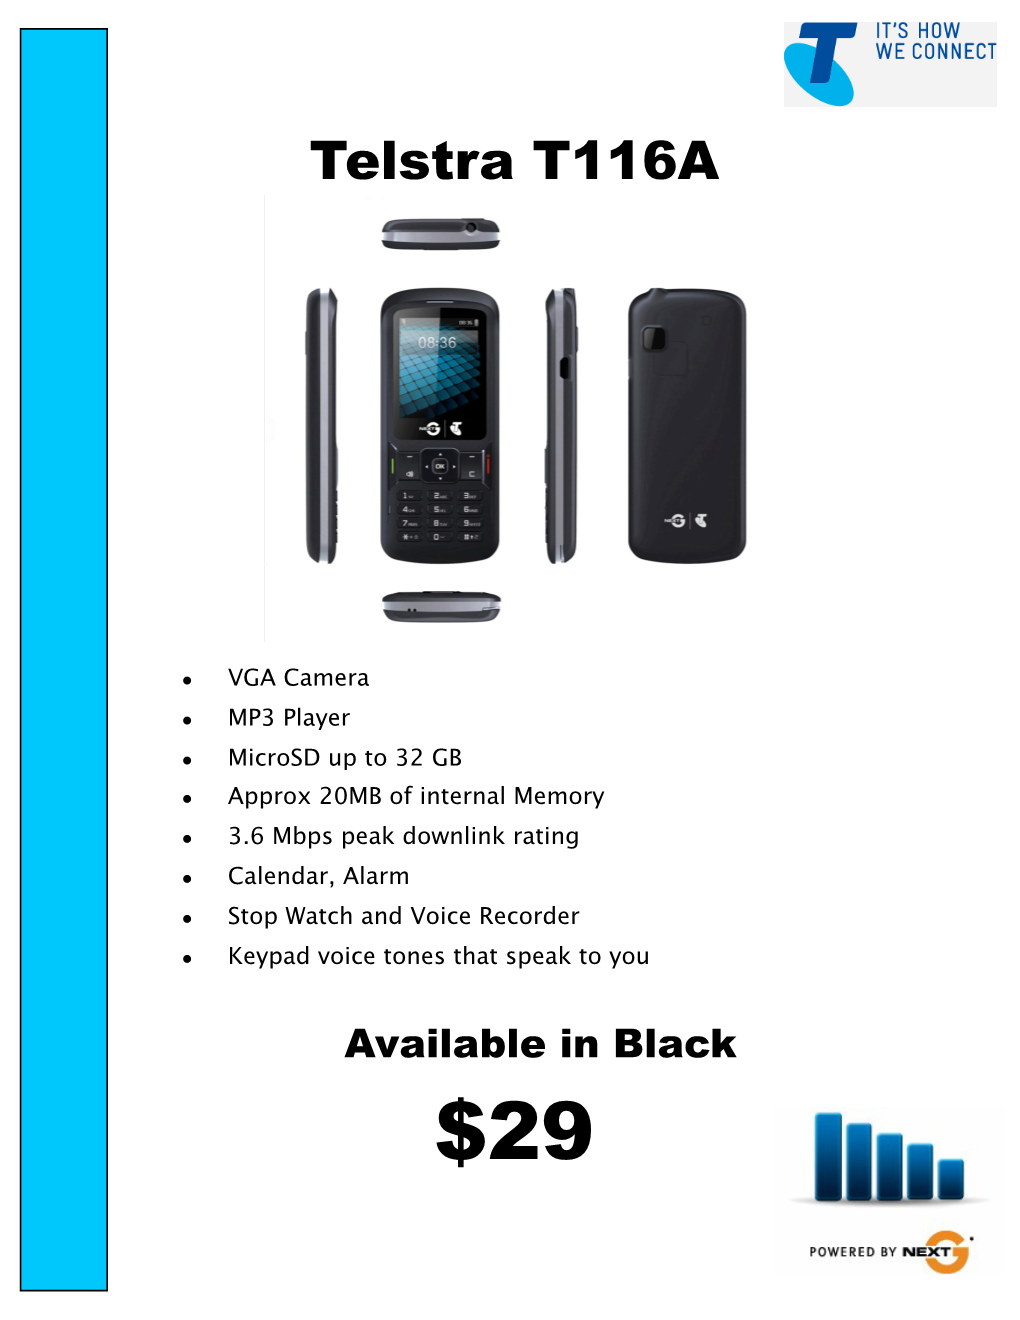 Telstra A5 Specs